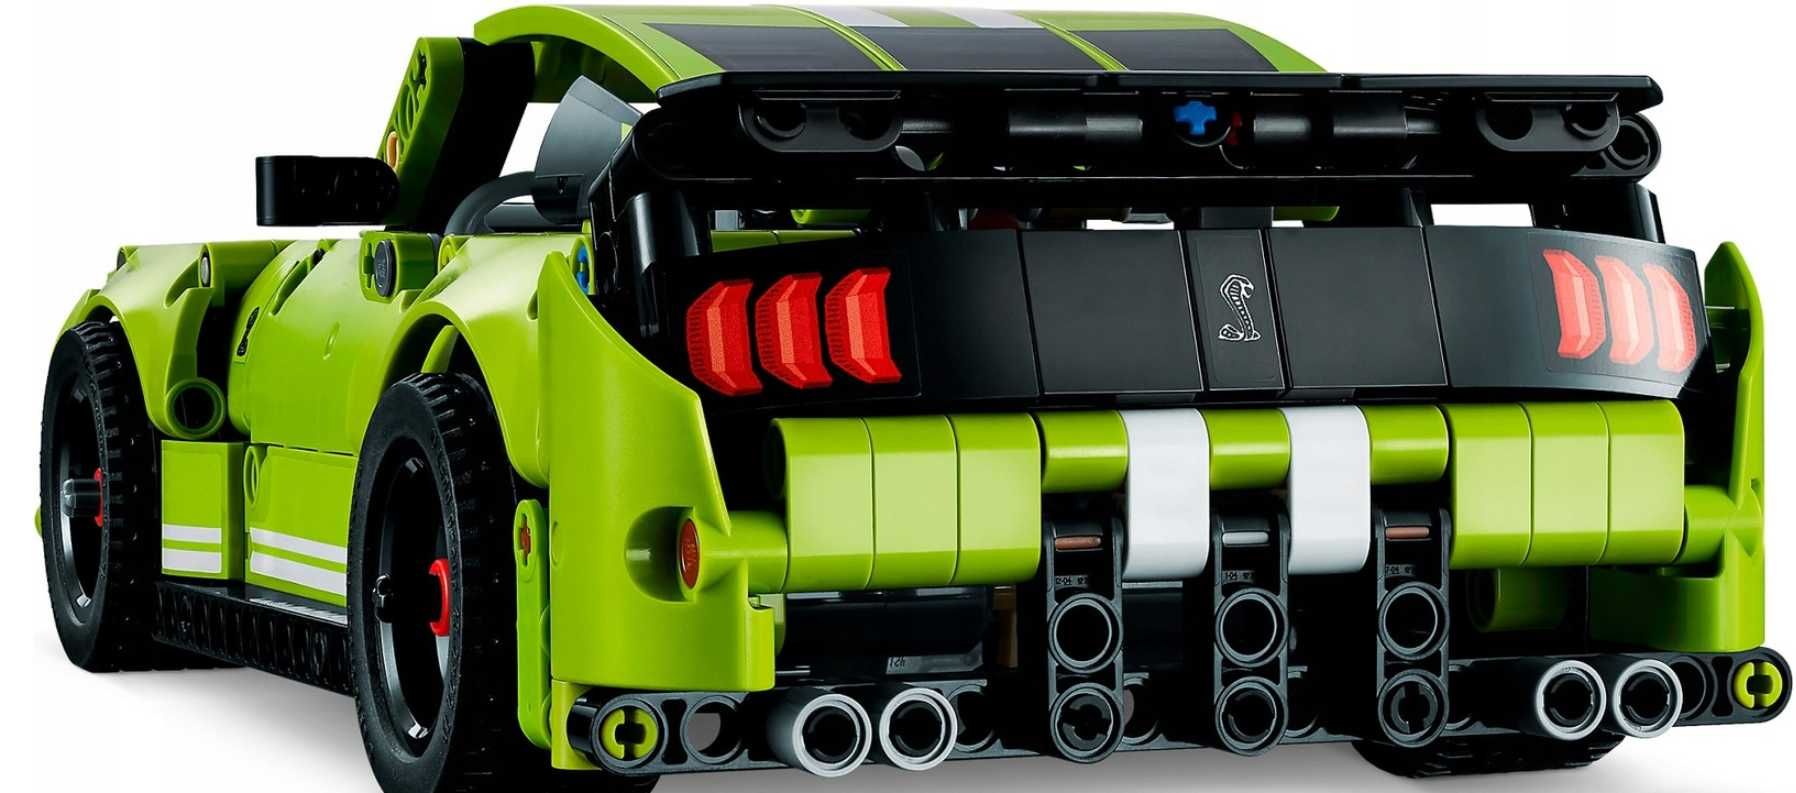 NOWE KLOCKI LEGO Technic Ford Mustang Shelby GT500 (Promocja 24H)